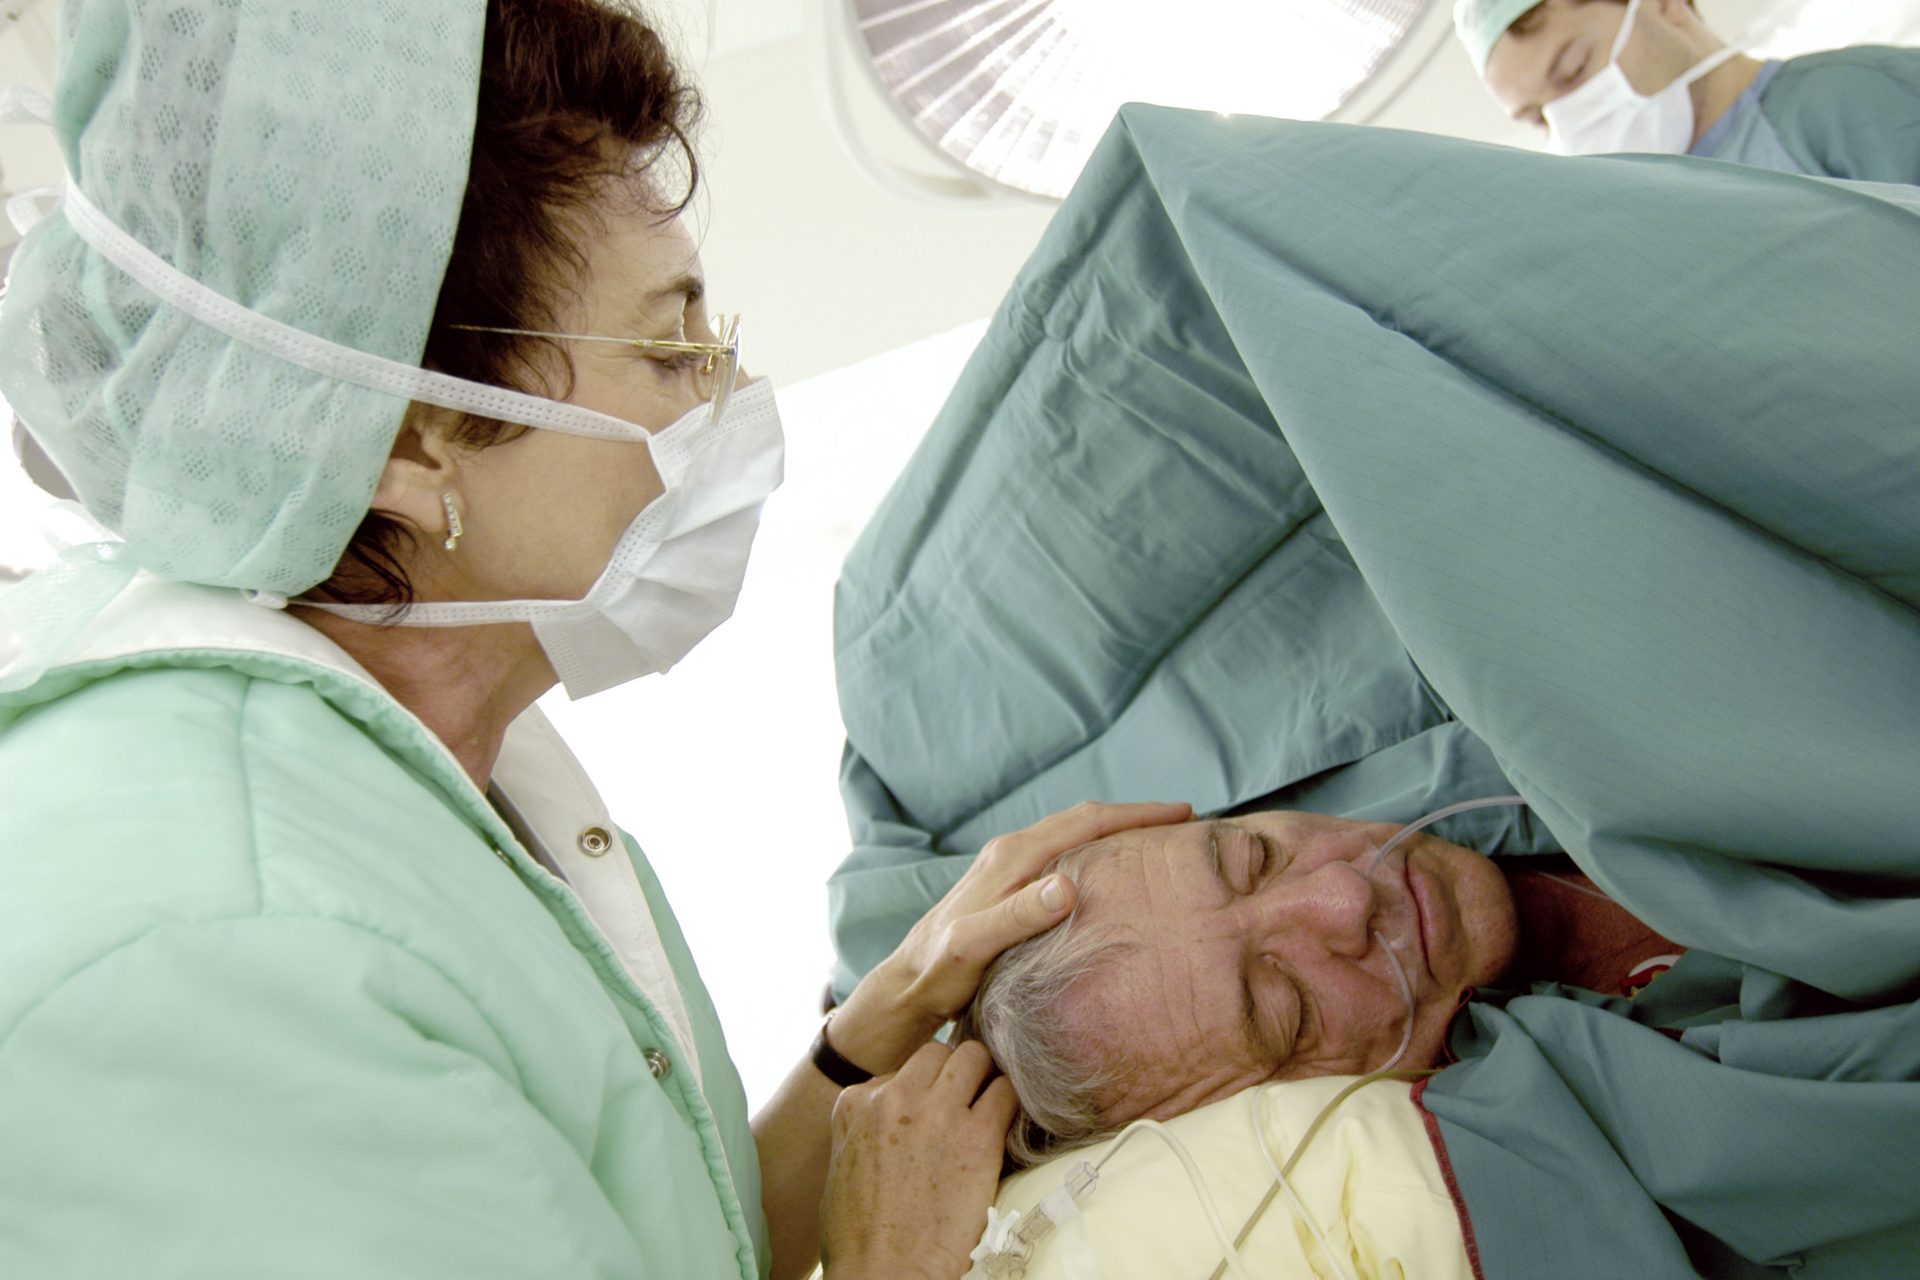 Chirurgie sous hypnose : cette alternative à l'anesthésie générale fonctionne-t-elle vraiment ?